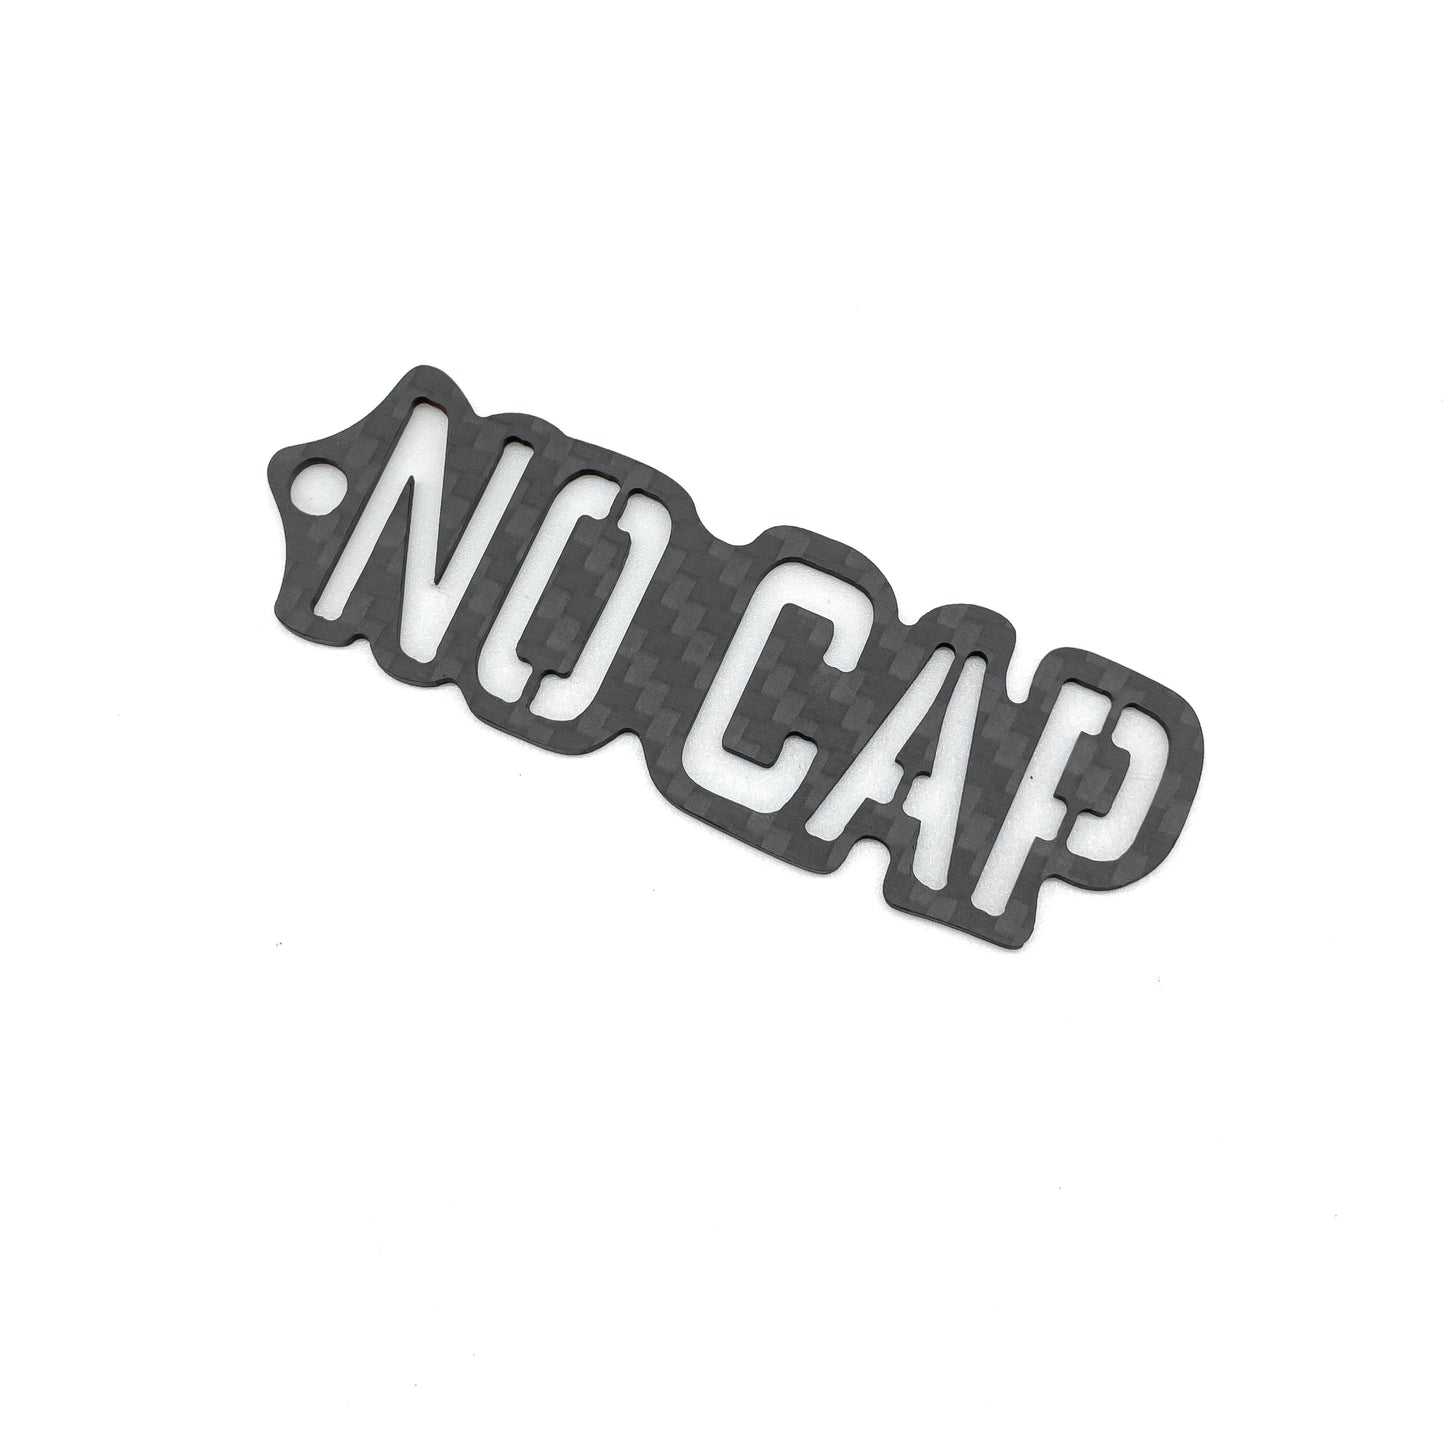 "NO CAP" Keychain